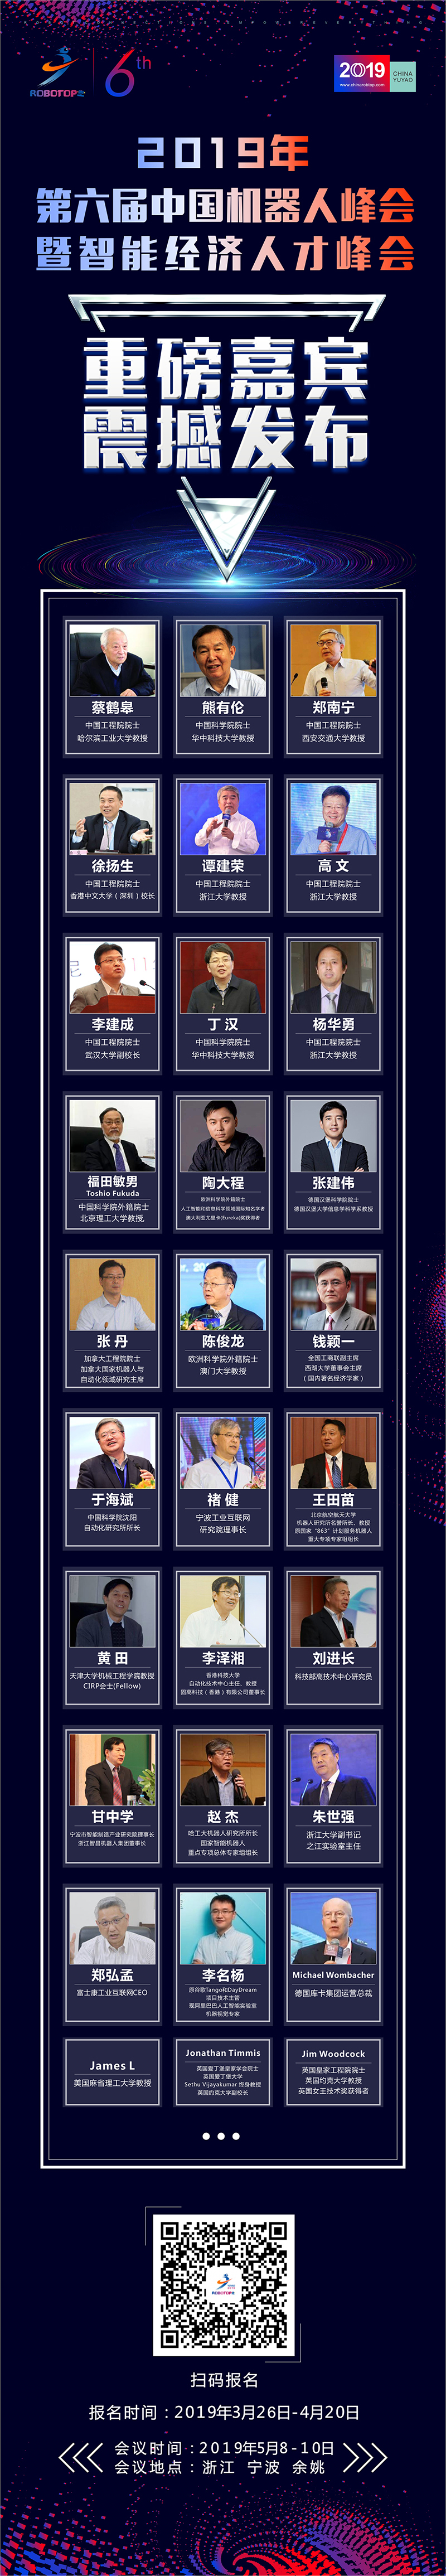 第六届中国机器人峰会暨智能经济人才峰会